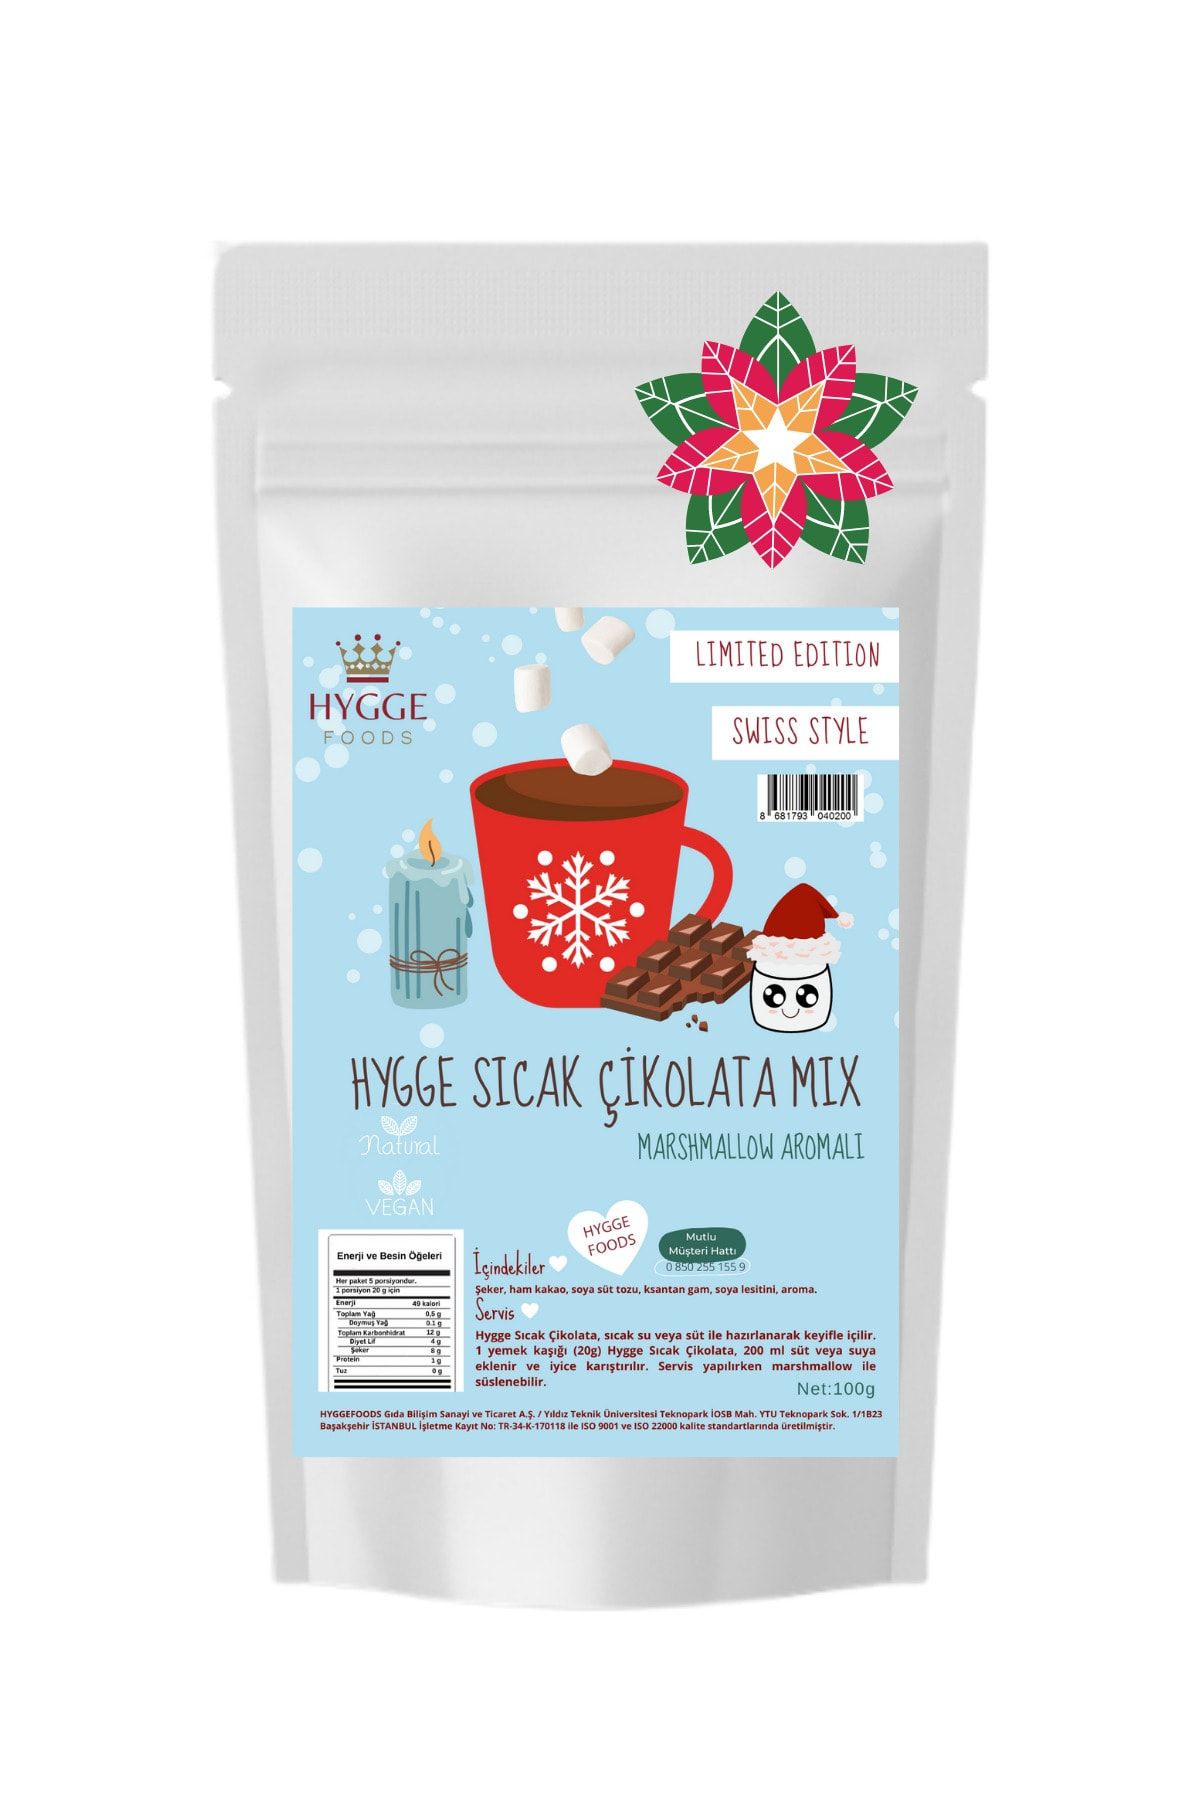 Hyggefoods Hygge Sıcak Çikolata Mix Marshmallow Aromalı - Swiss Style Premium Yılbaşı Seti